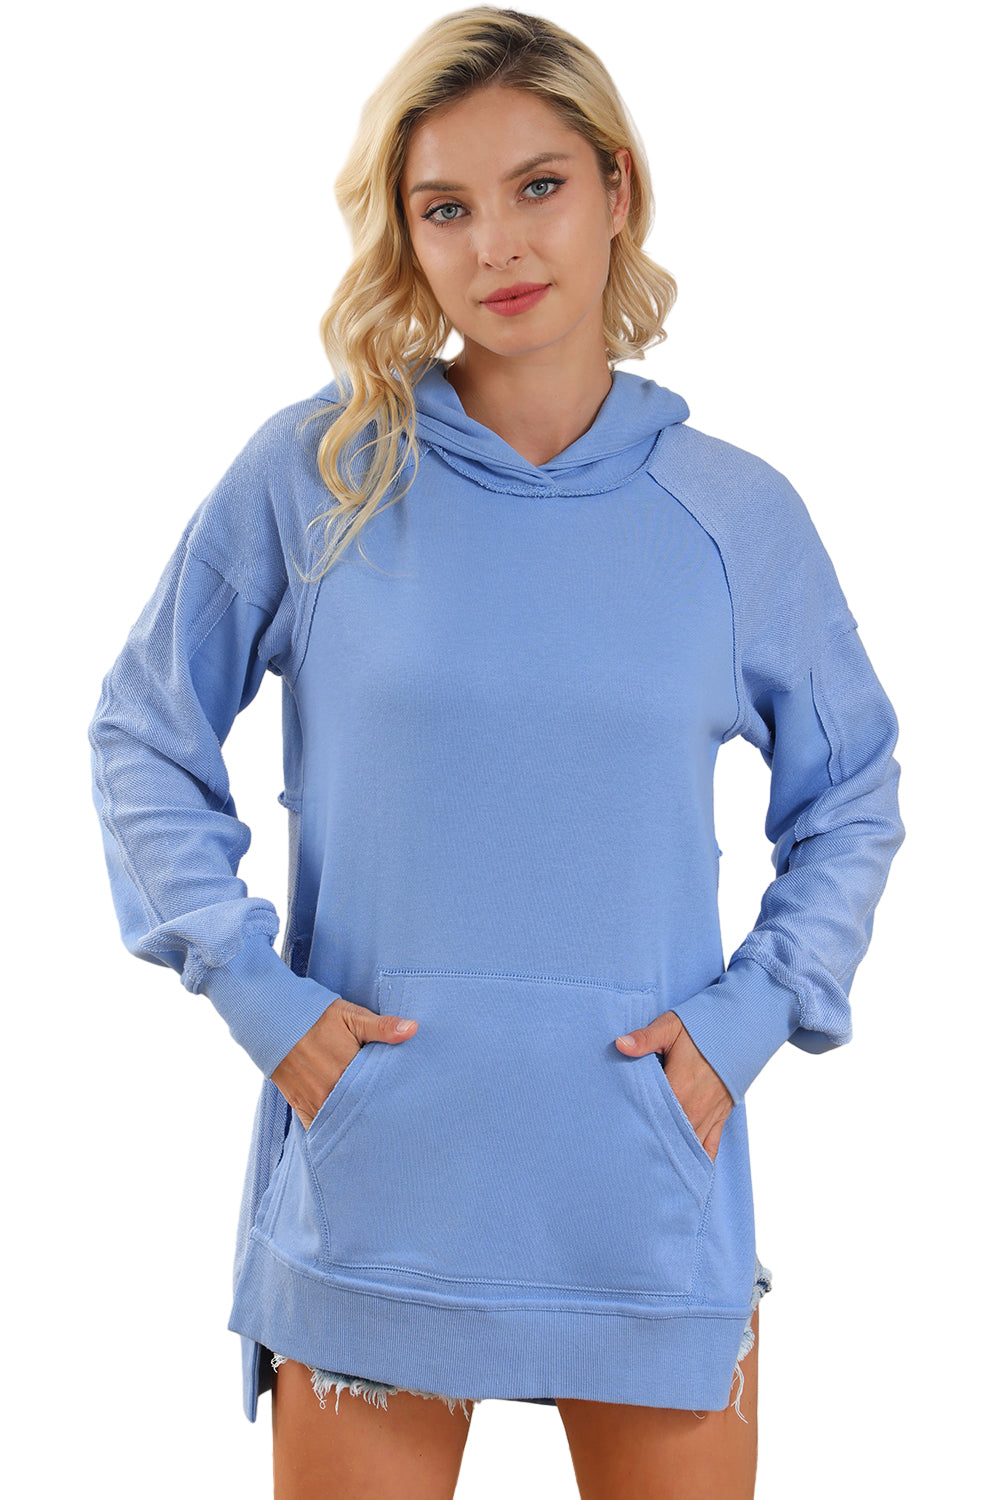 Blauer Tunika-Hoodie im Patchwork-Stil mit Kängurutaschen und rohen Nähten